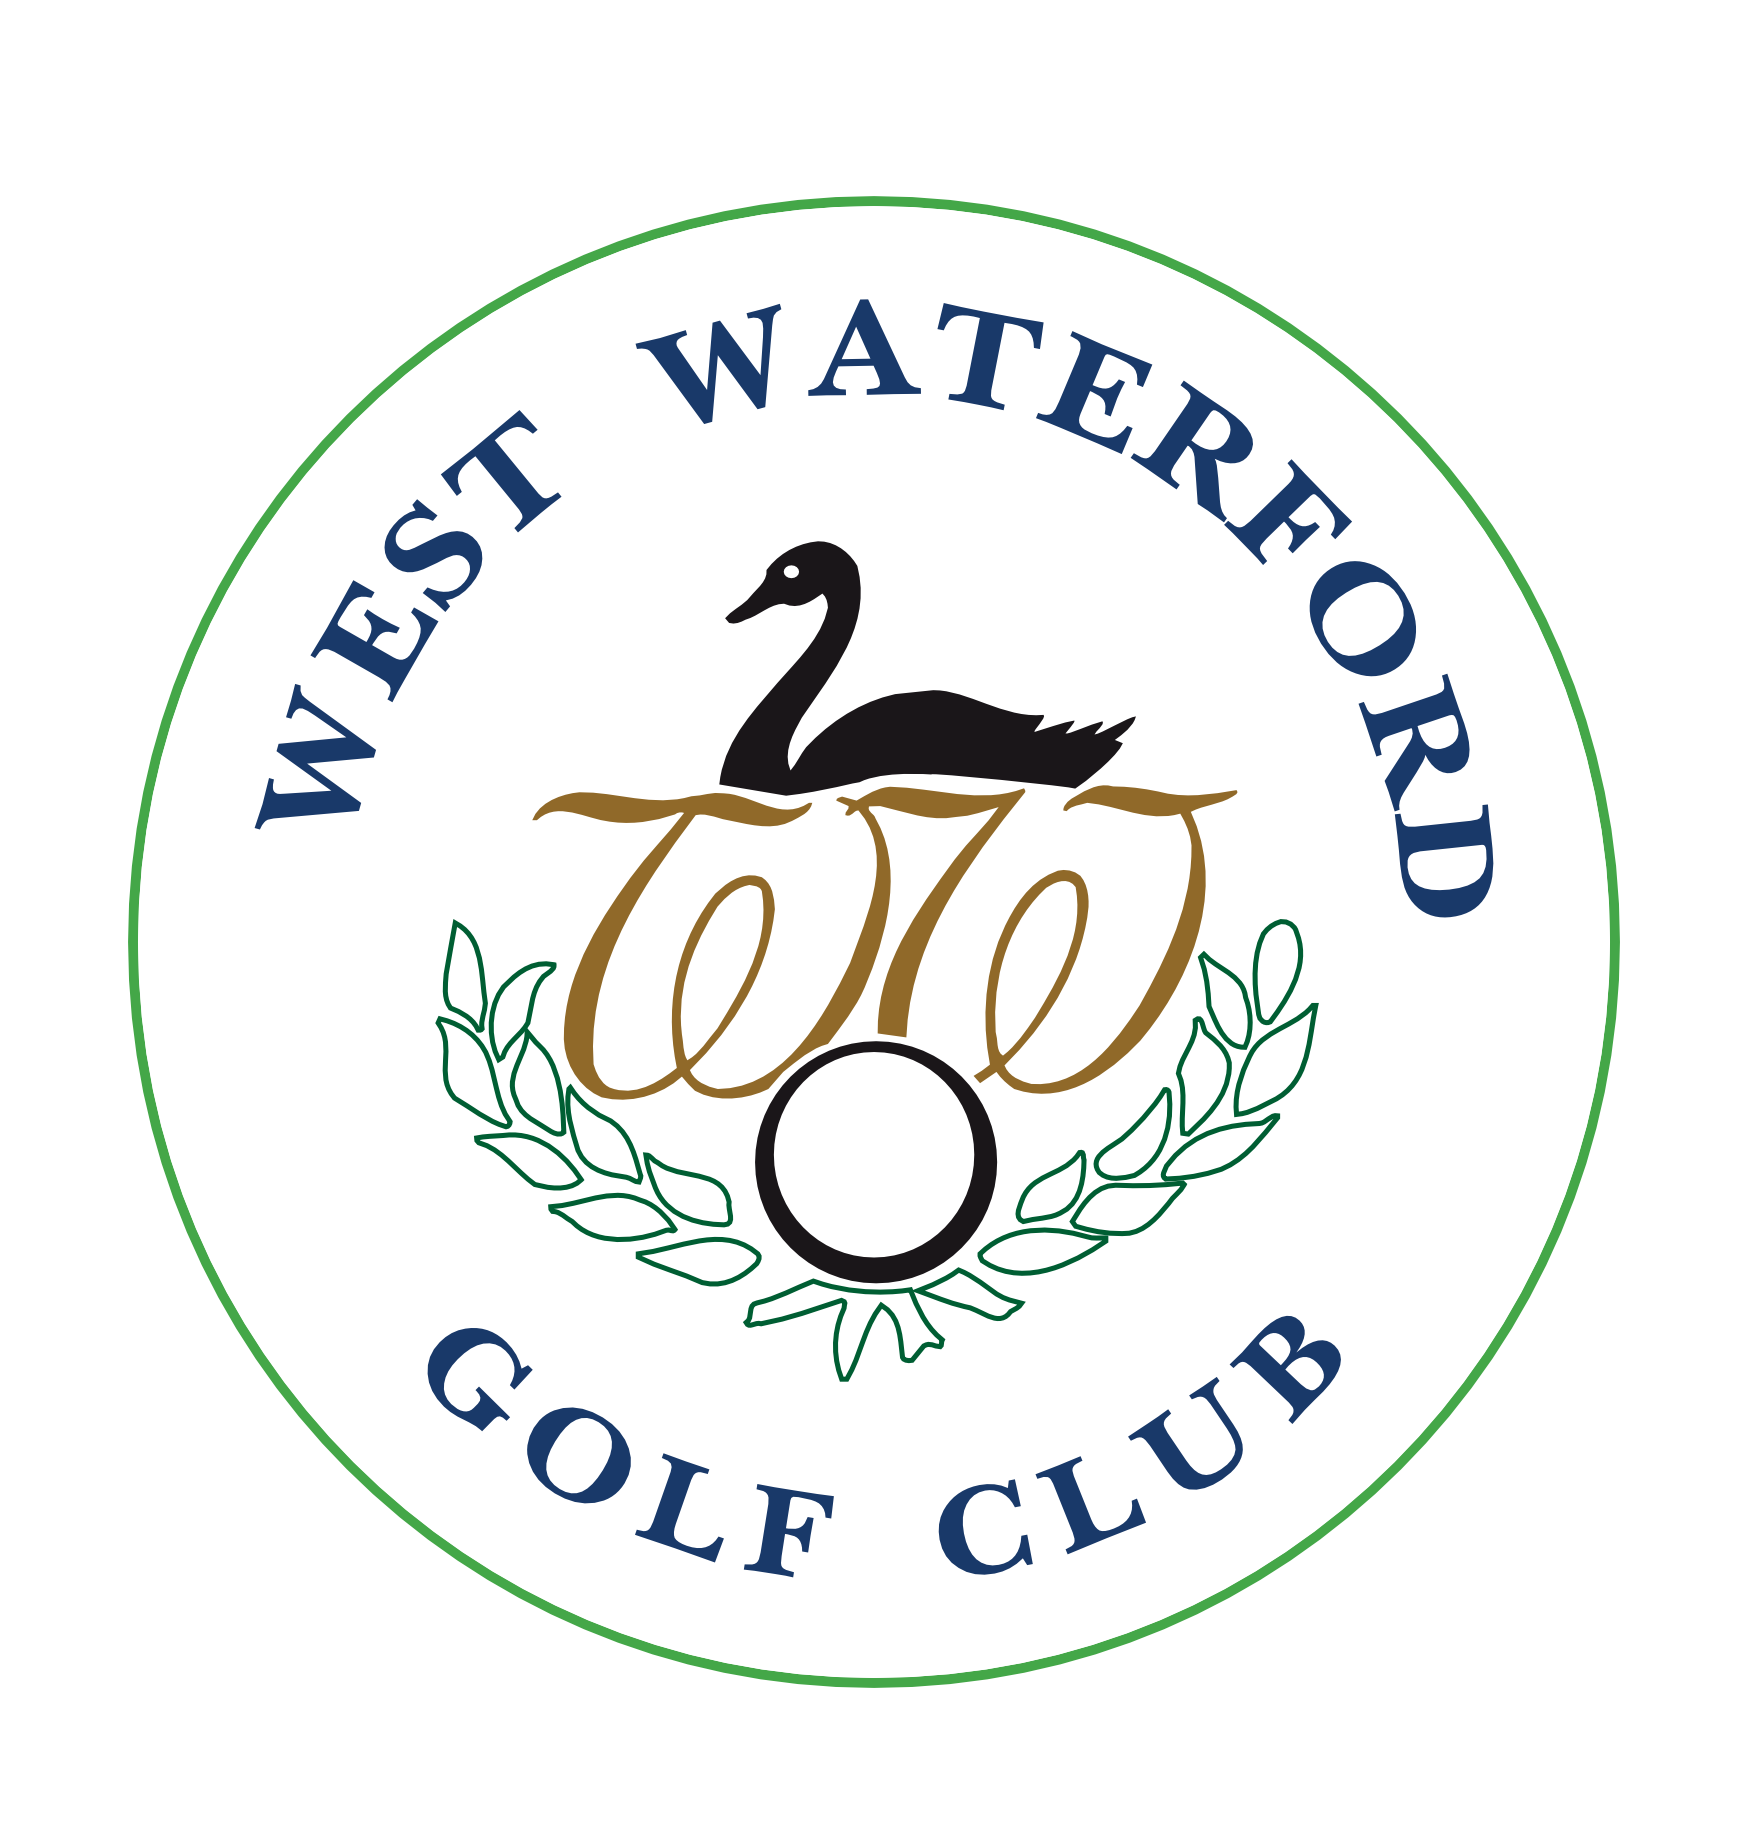 West Waterford Golf Club